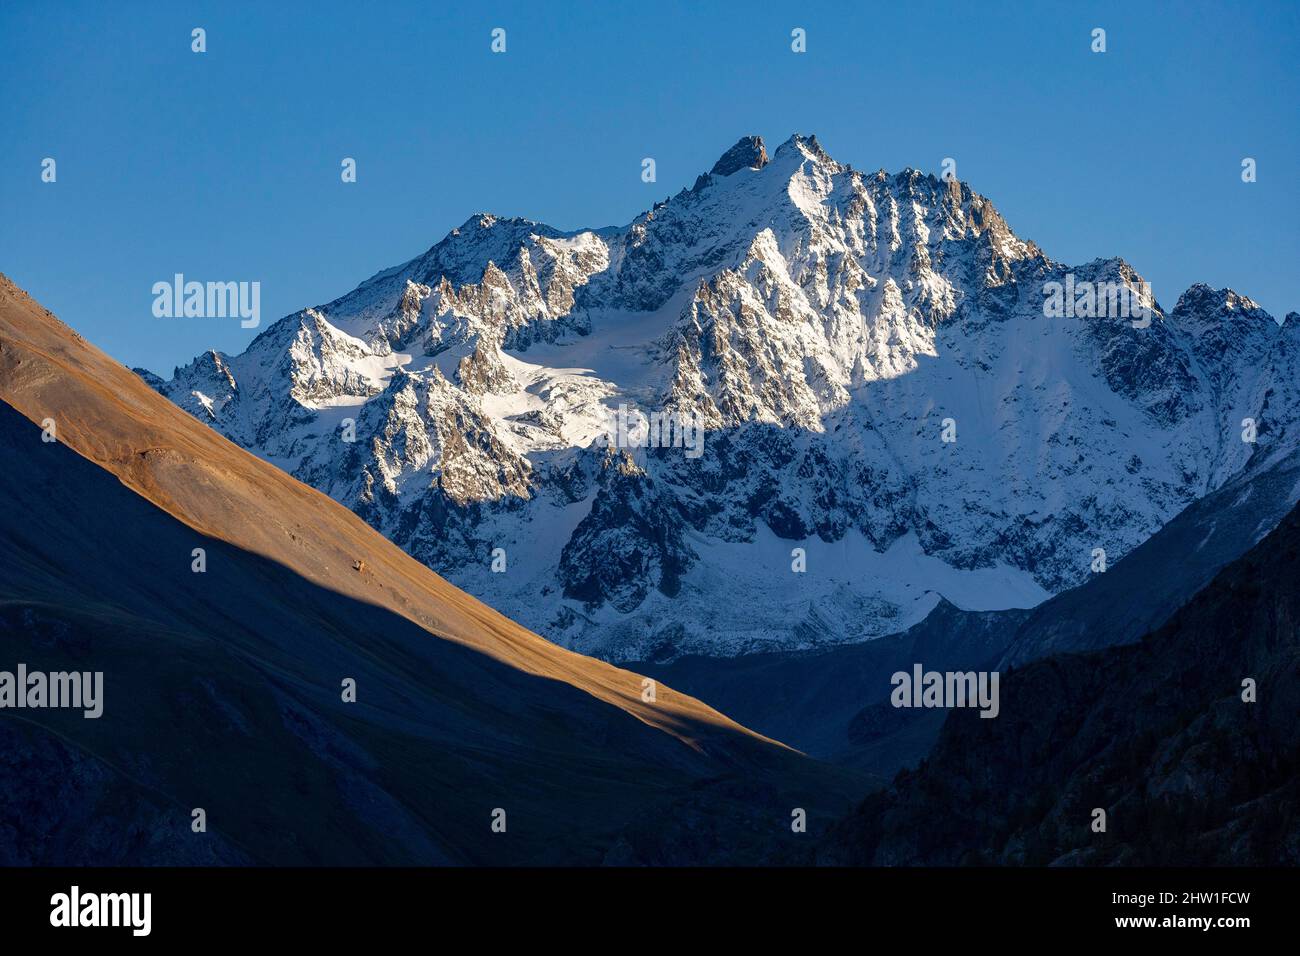 France, Hautes-Alpes, Ecrins national park, the summit of Pic des Agneaux (3663 m) Stock Photo